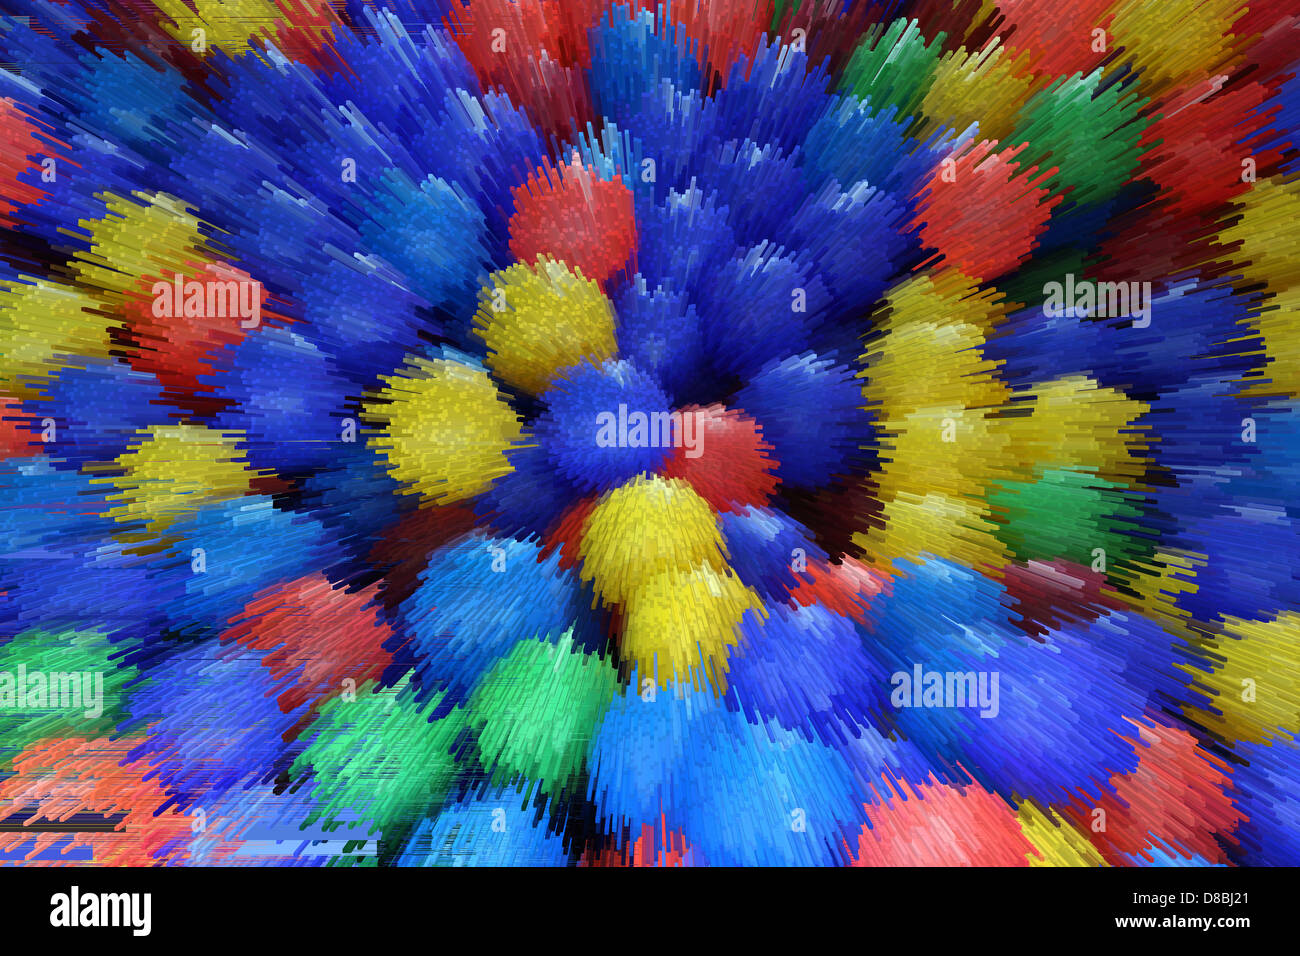 Immagine di sfondo da strisce di colori diversi Foto Stock